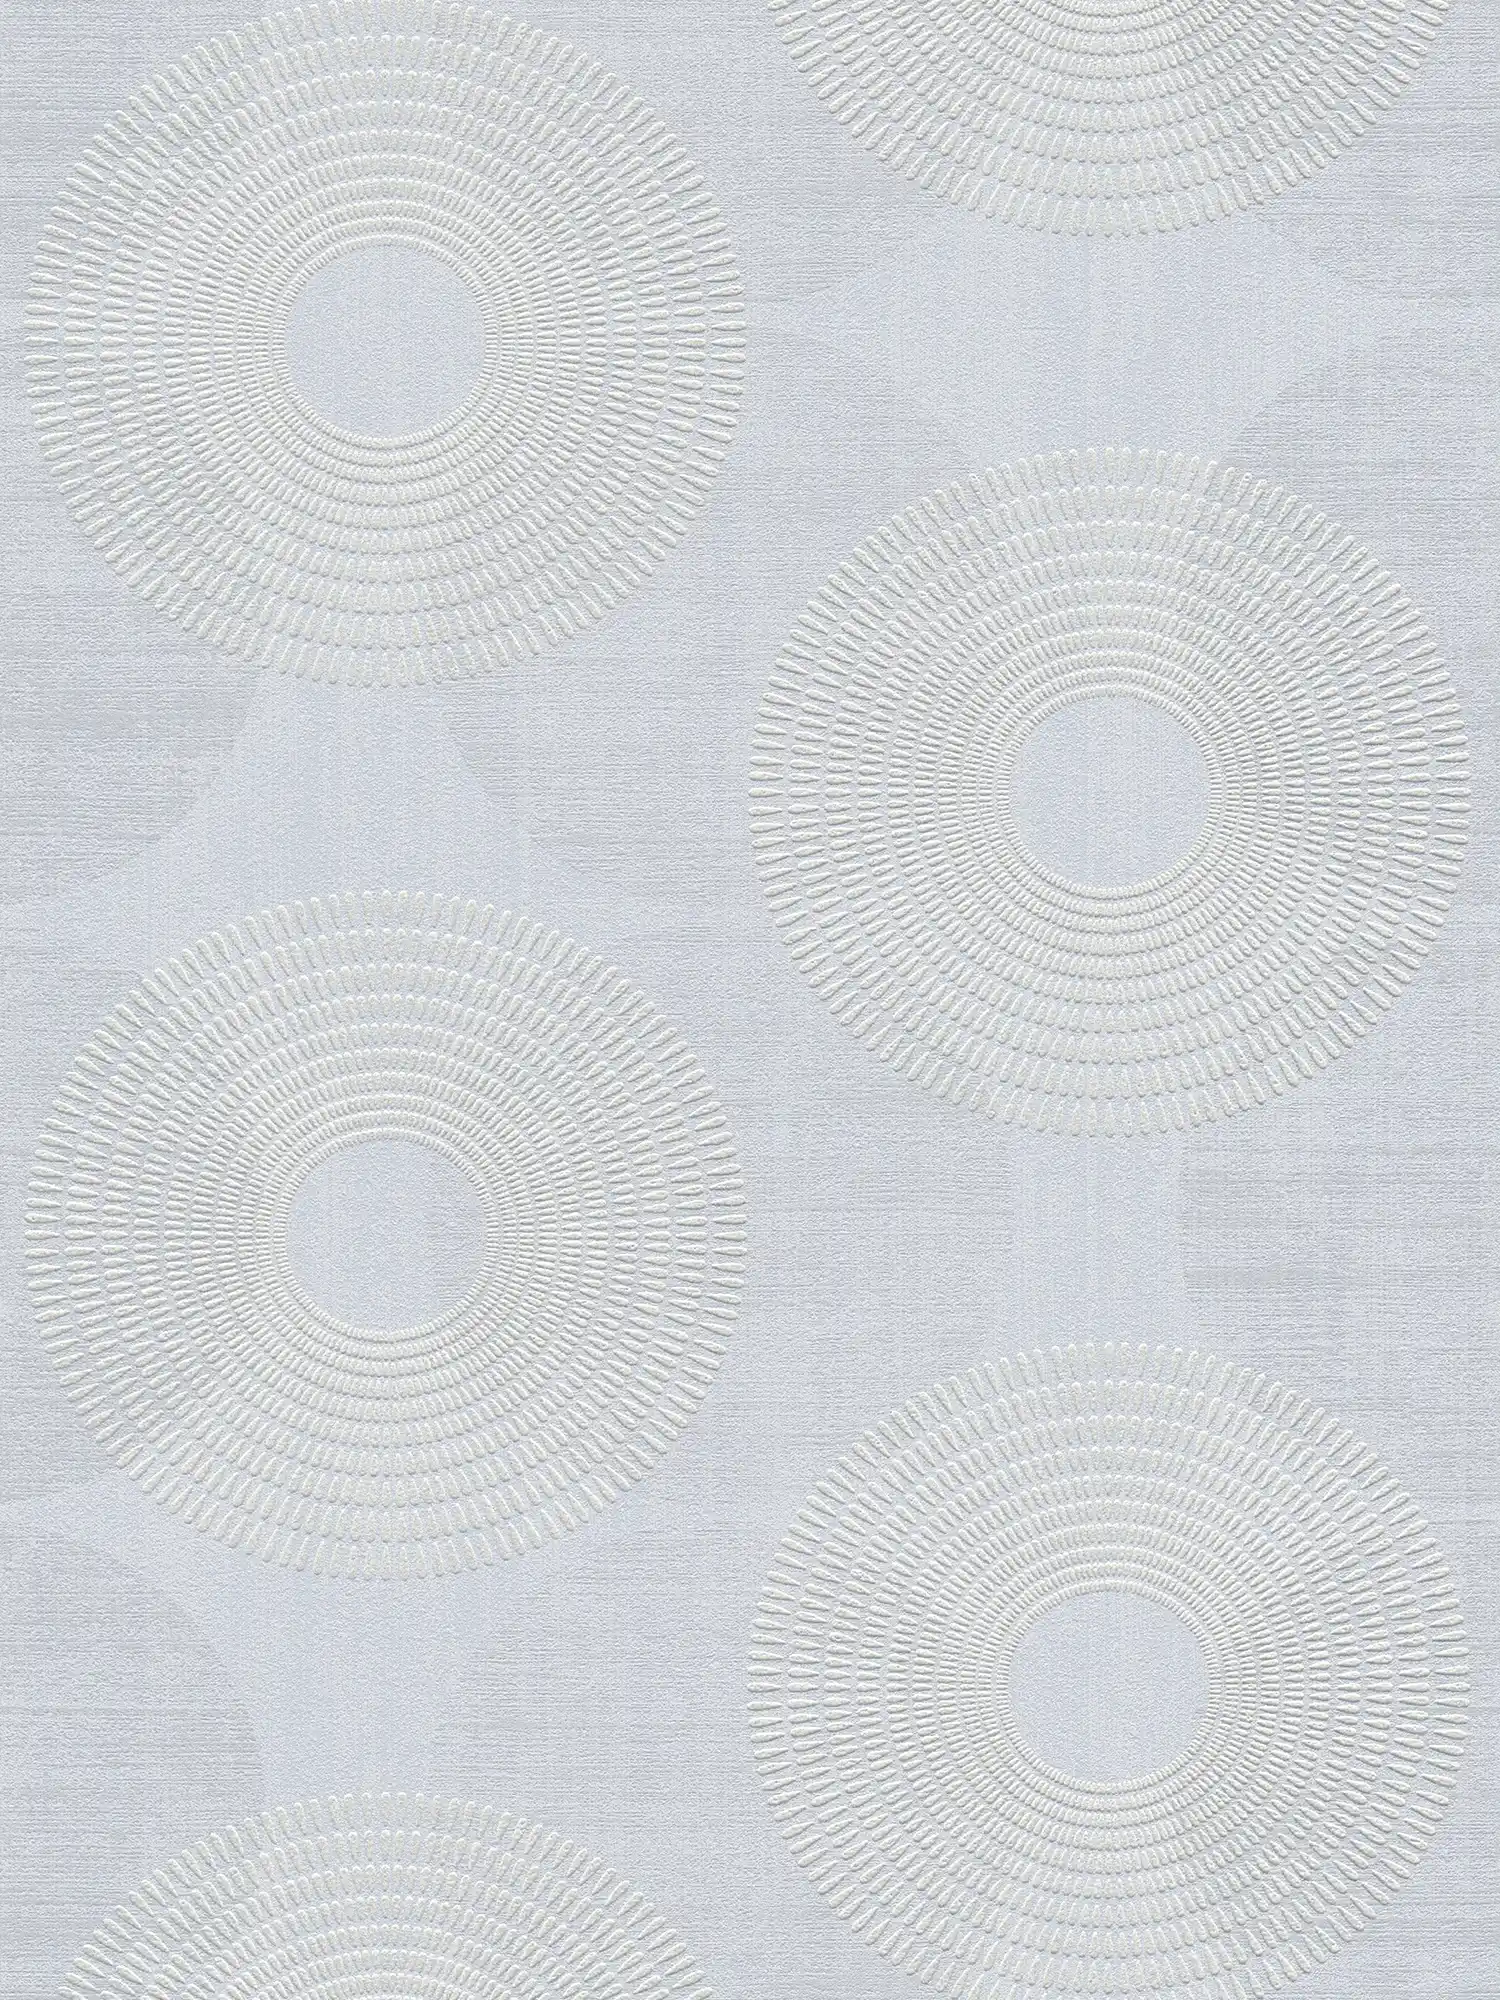 Vliesbehang met geometrisch ontwerp van cirkels - grijs
